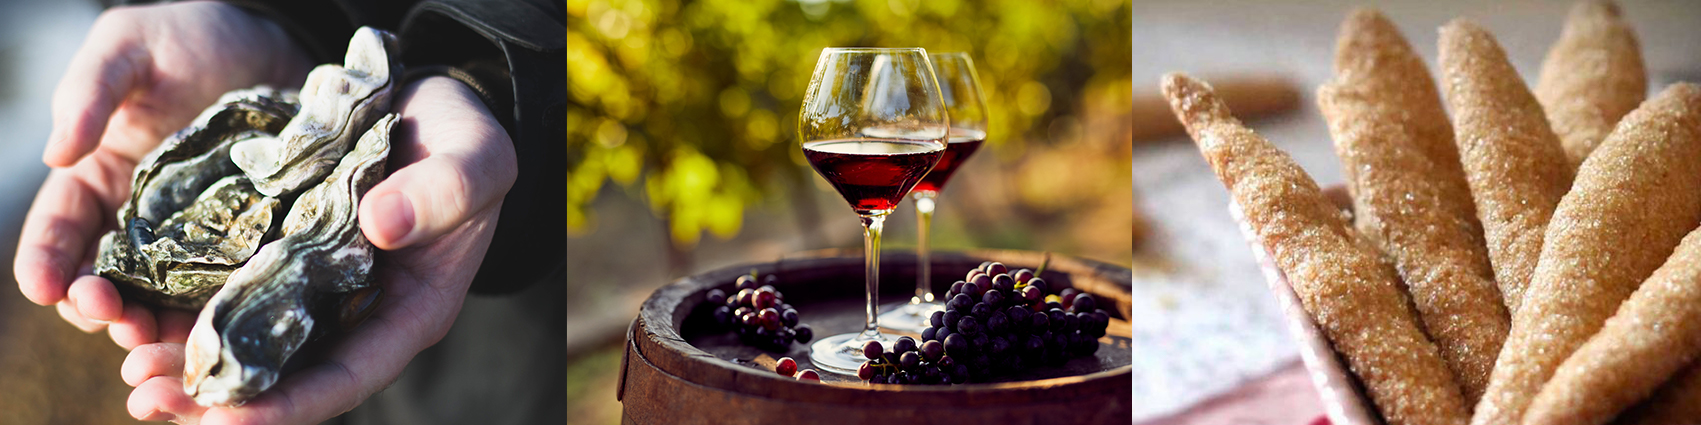 Spécialités de l'Hérault : vin, huitres, zézettes